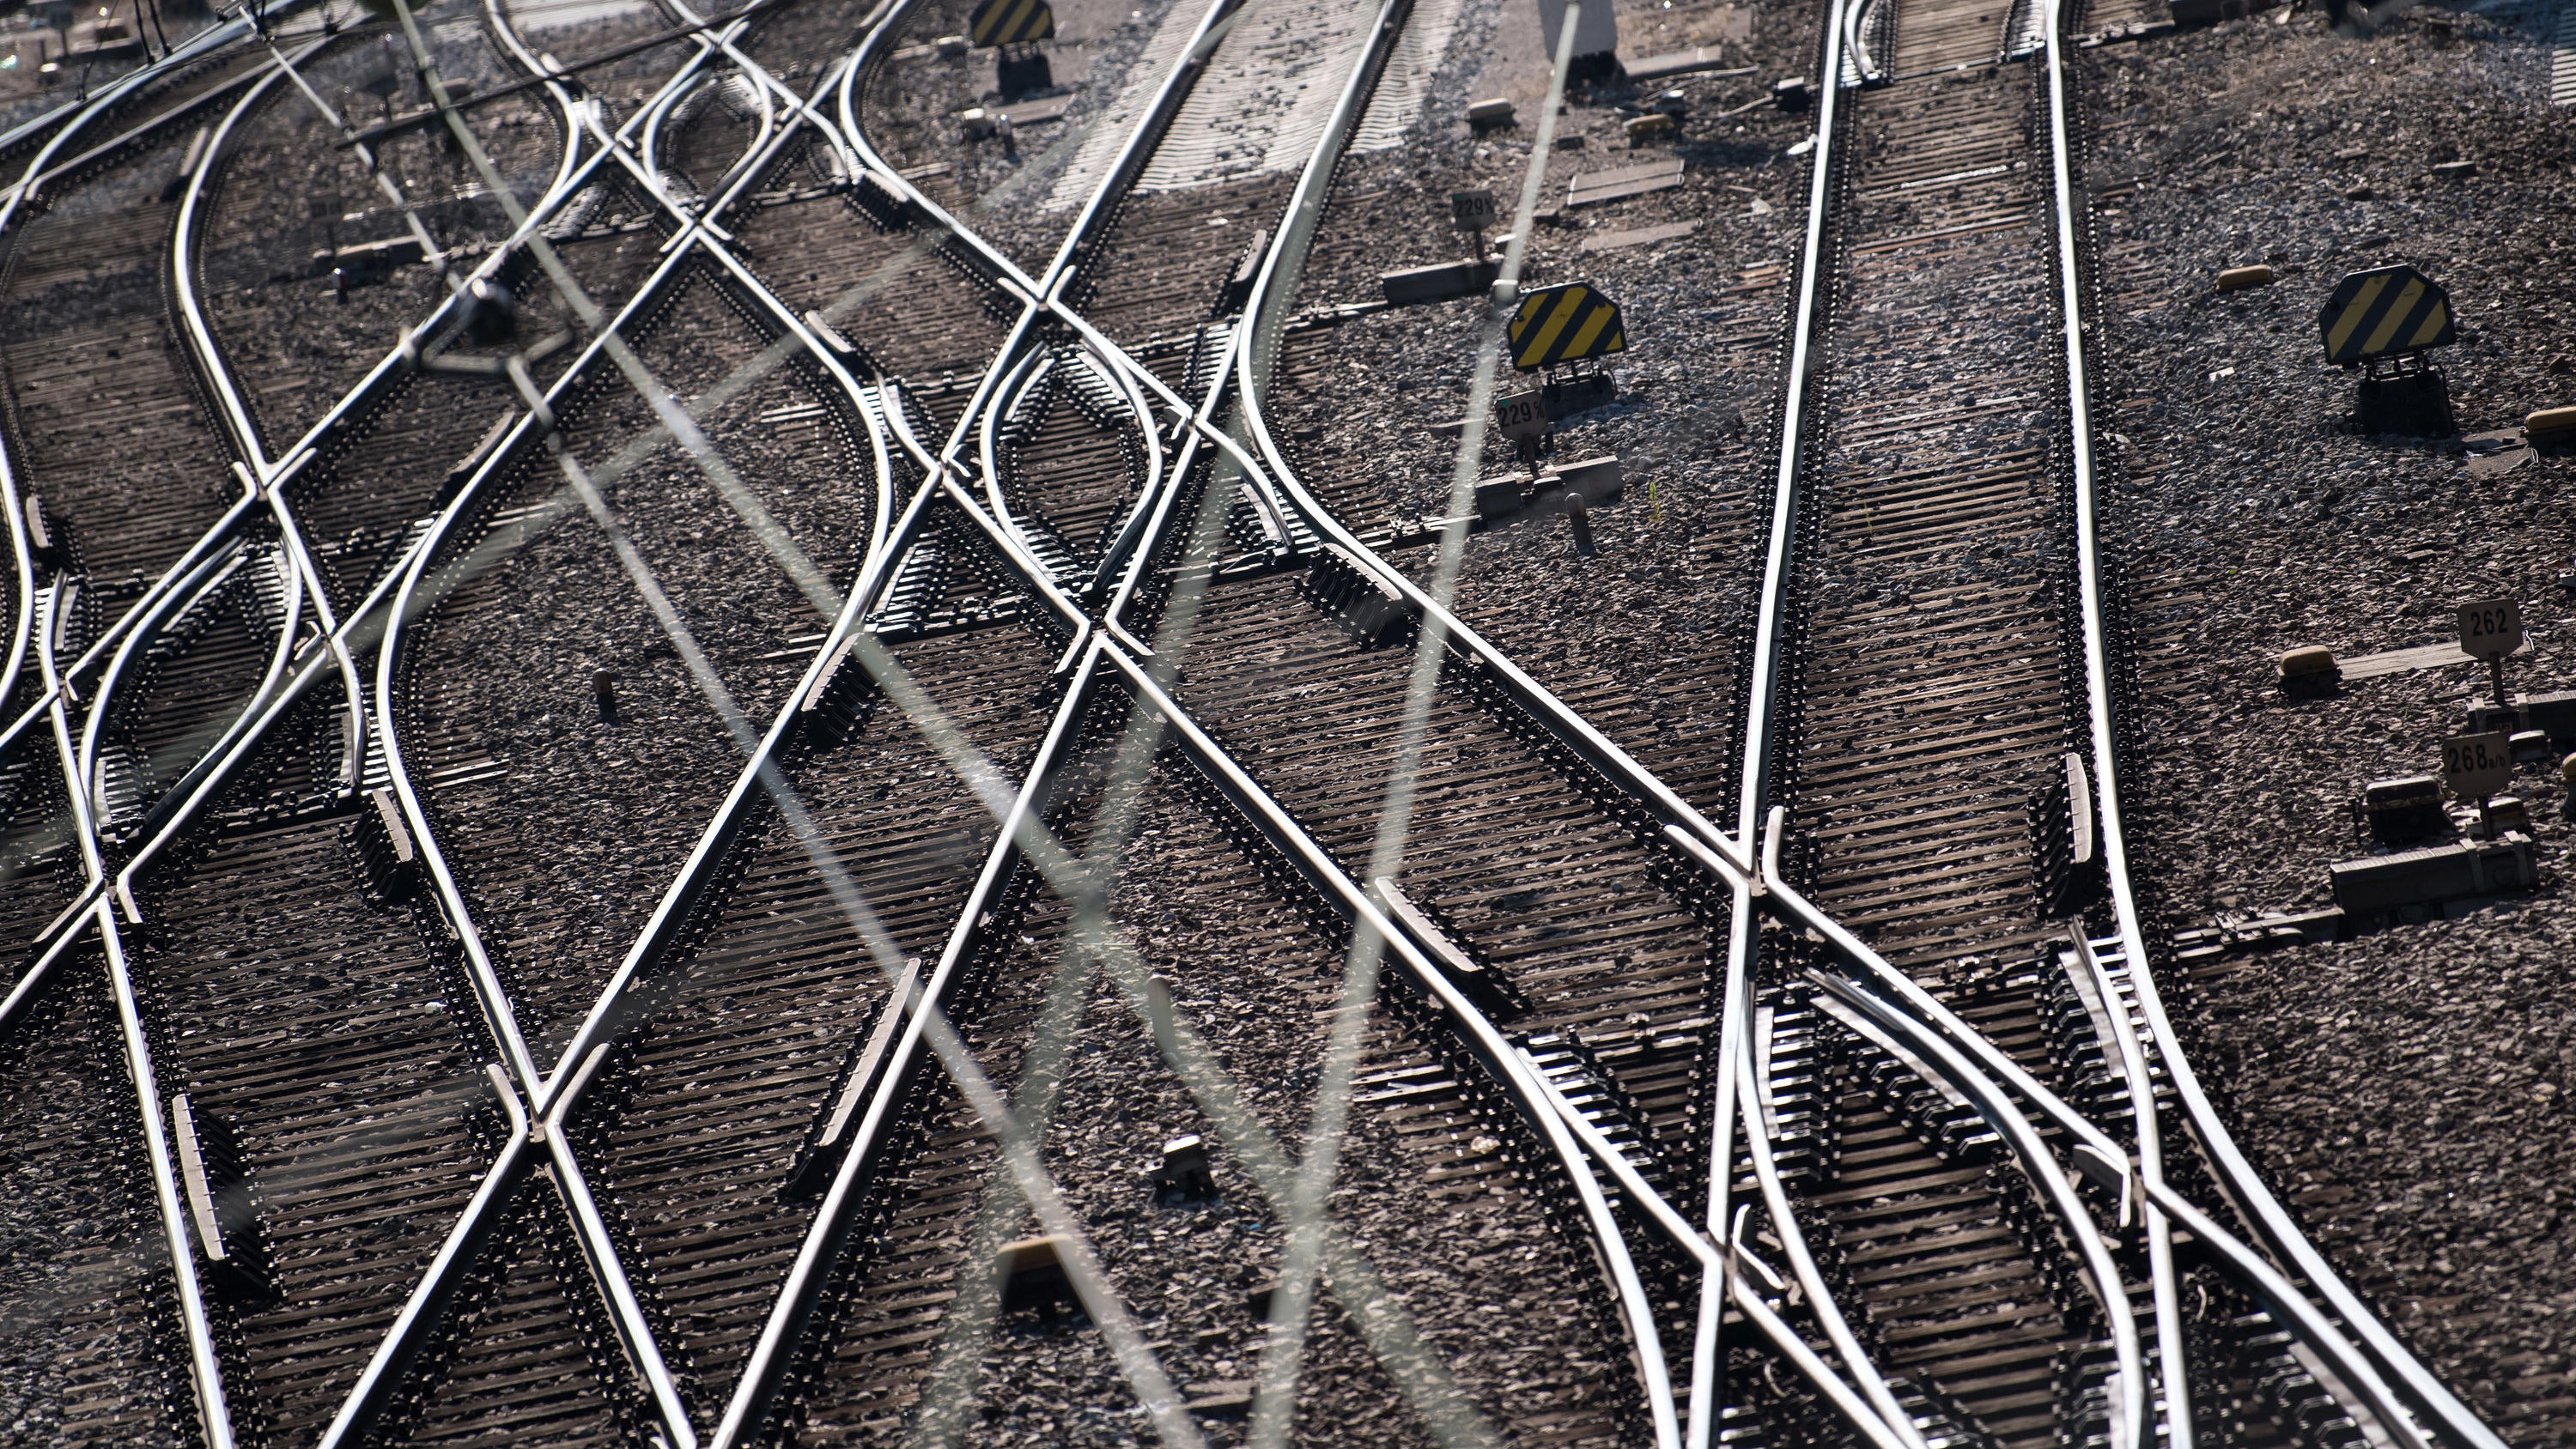 ARCHIV - 13.07.2018, Bayern, München: Gleise und Oberleitungen sind am Hauptbahnhof zu sehen. Technische Störungen sorgen häufig für Probleme im Bahnverkehr. Die Digitalisierung soll helfen, diese zu verhindern. Tausende Weichen können jetzt selbst d